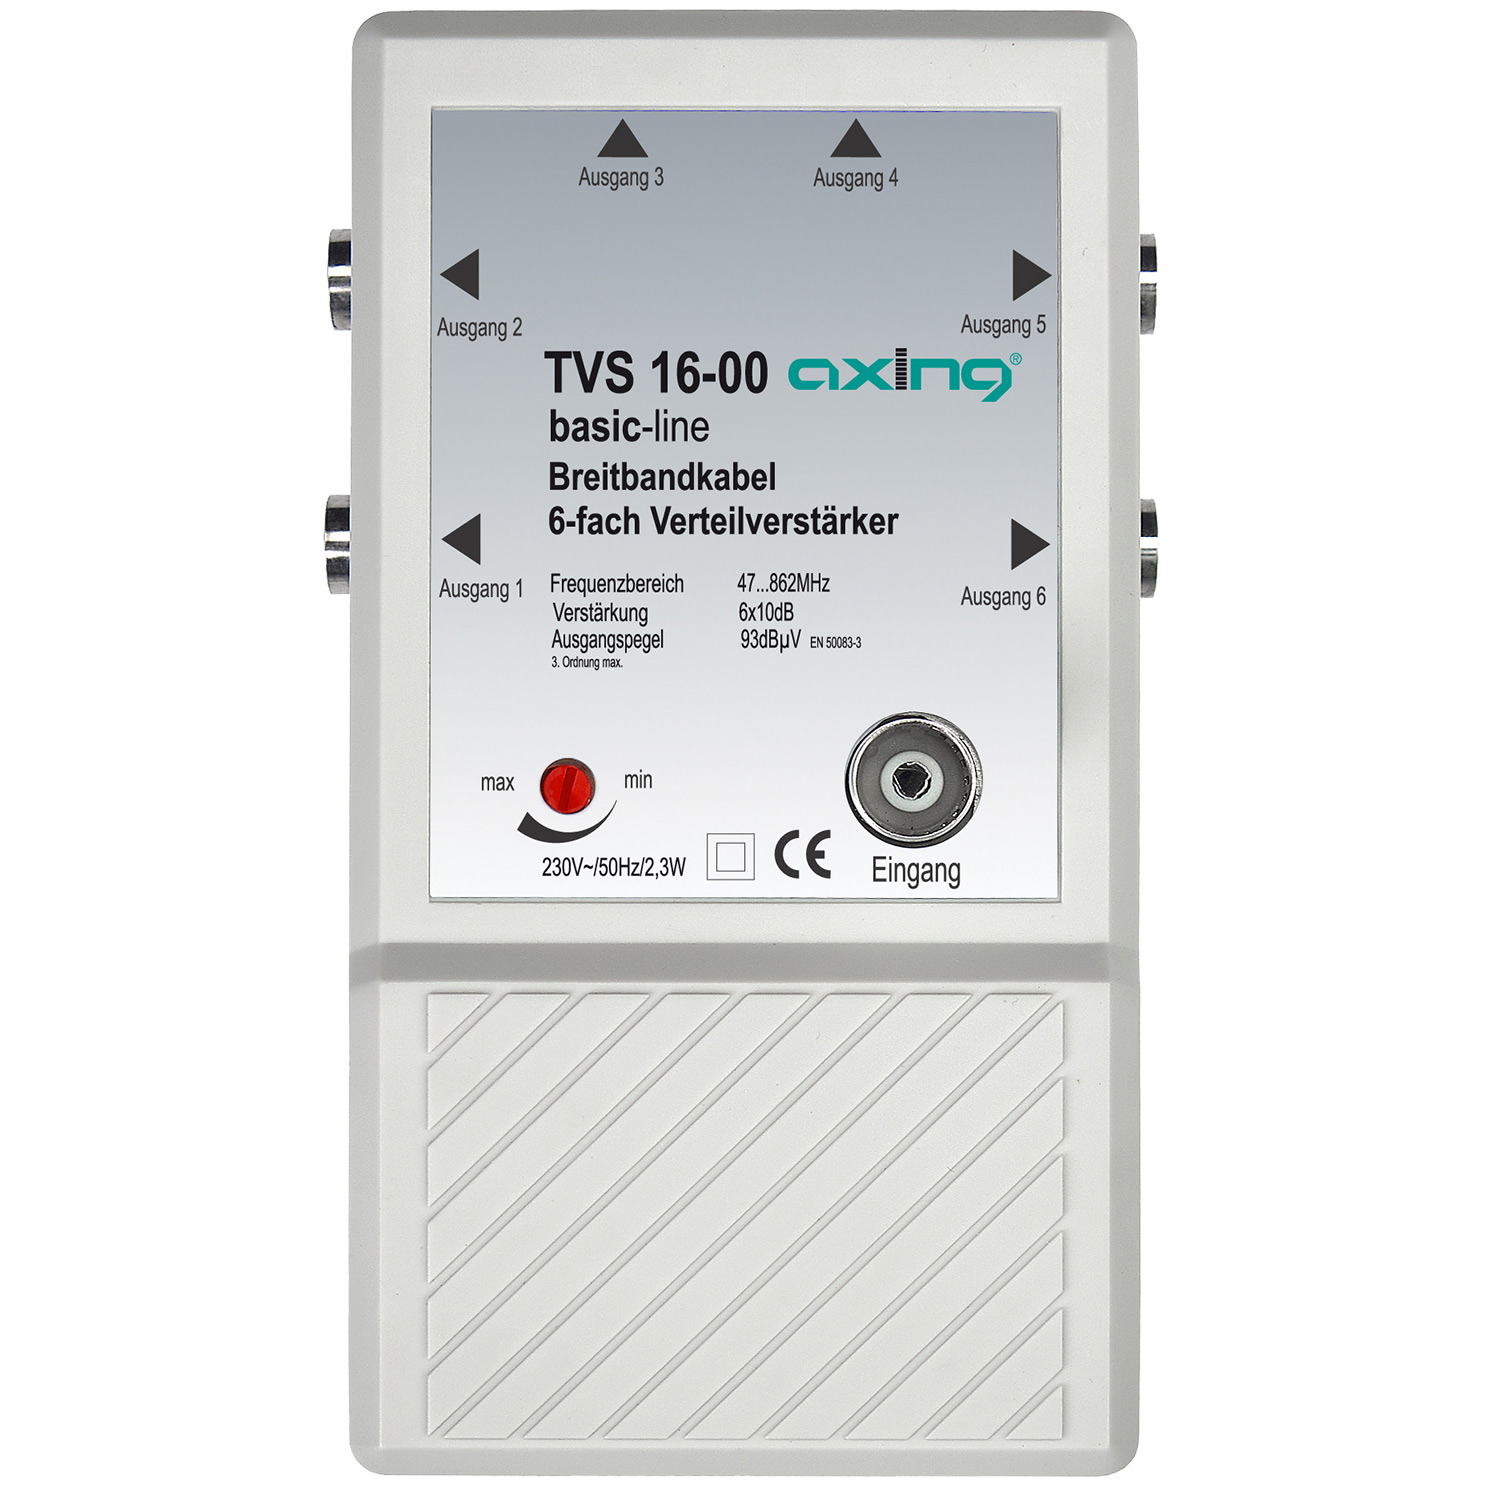 TVS Verteilverstärker 16-00 AXING Verteilverstärker